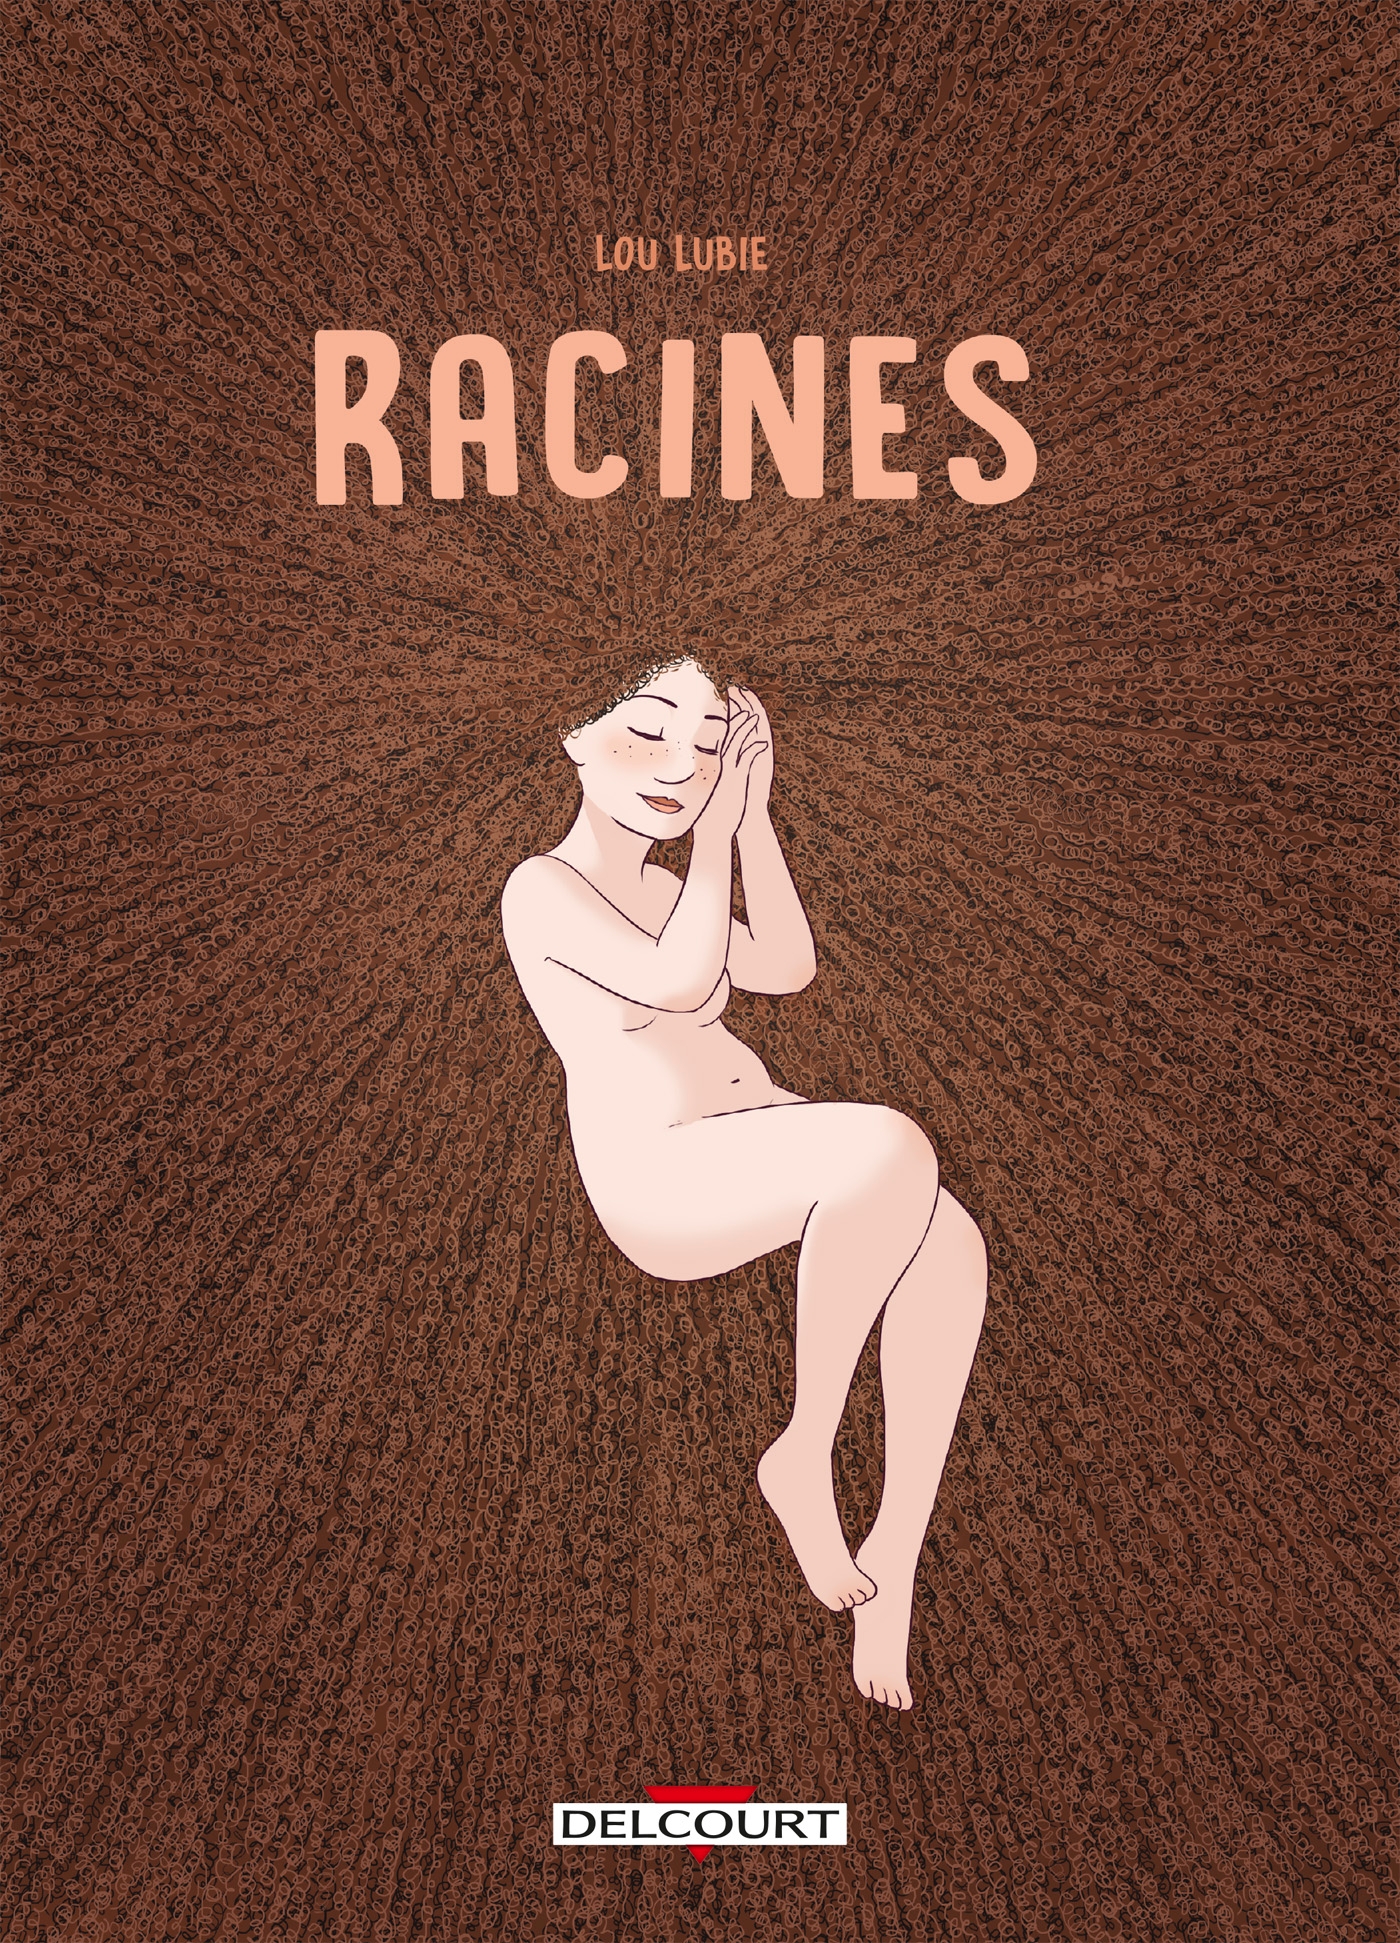 Lou Lubie: Racines (Paperback, Français language, Delcourt)